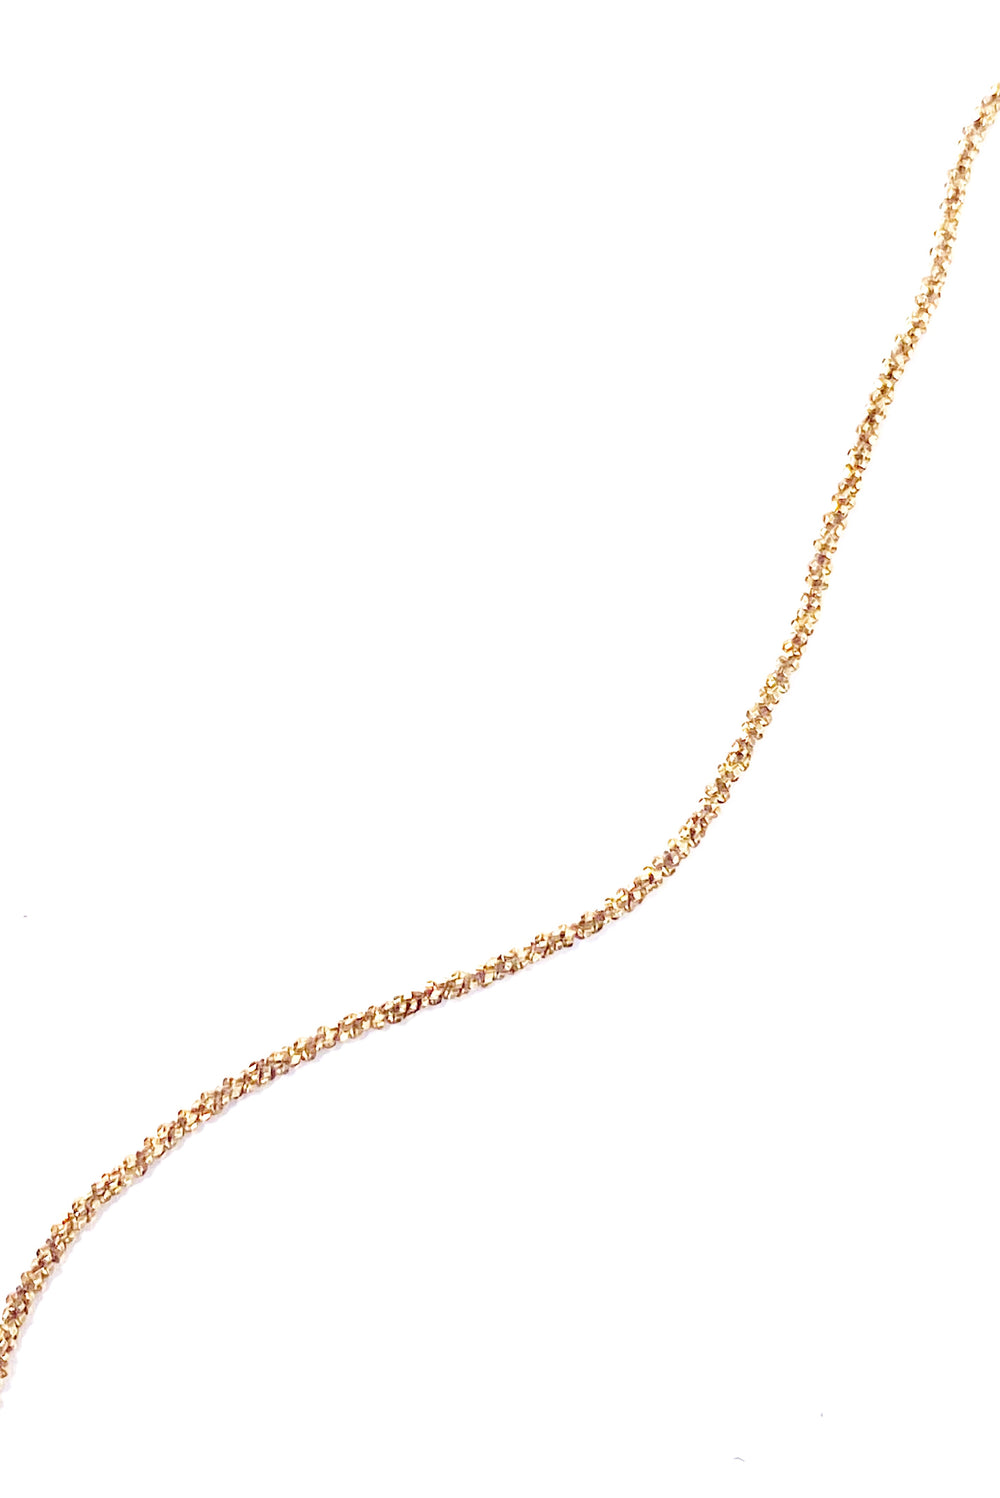 Le Chain Necklace 75 Cm